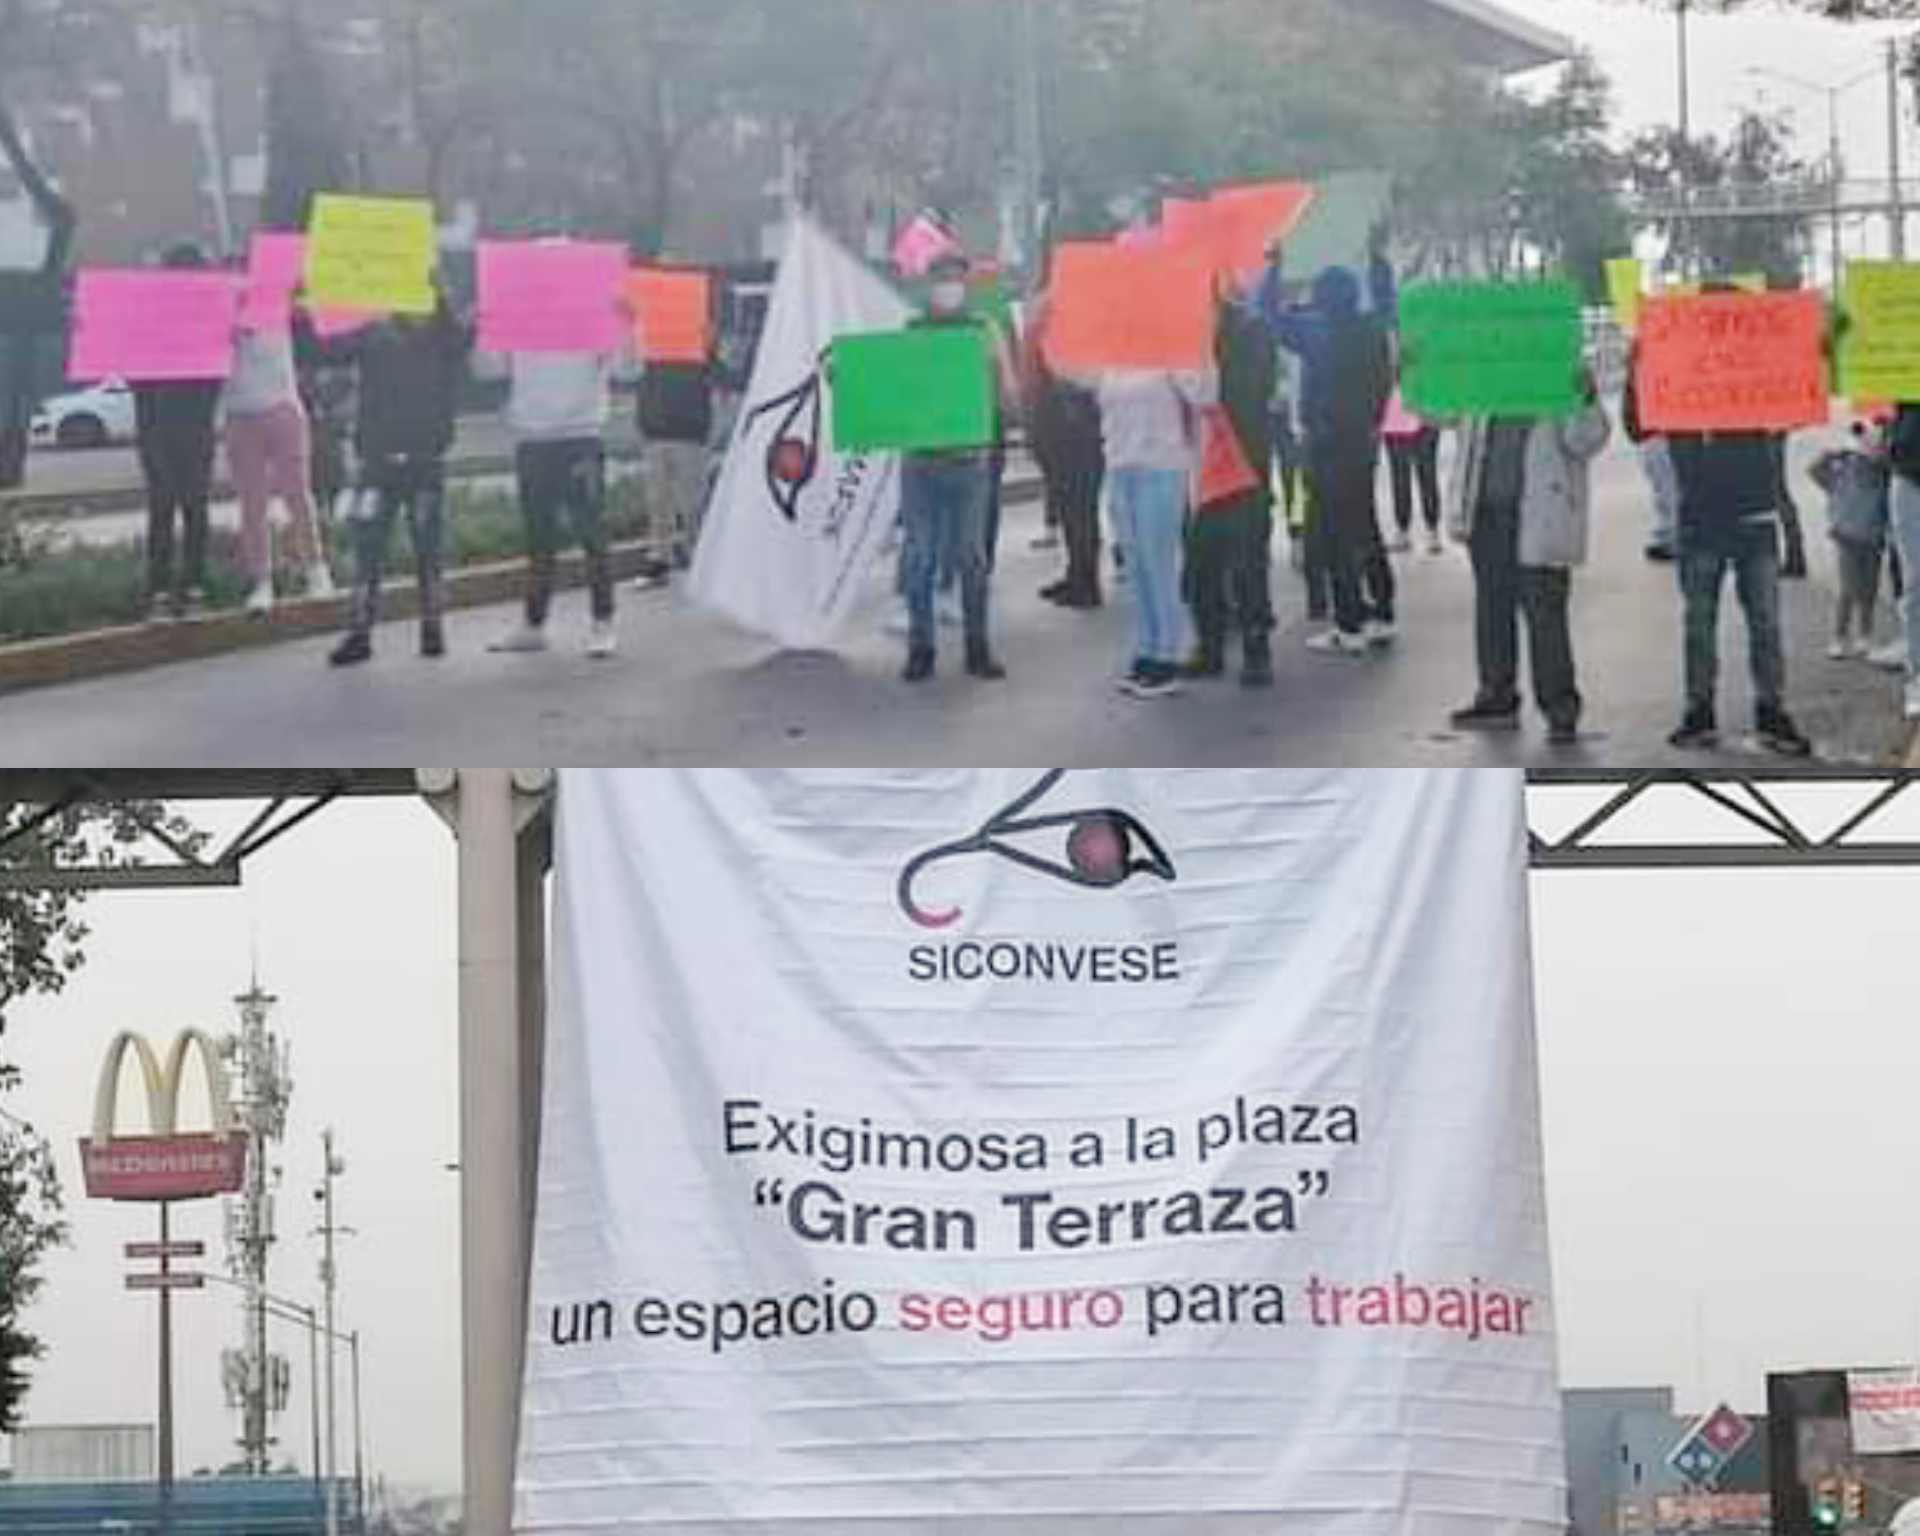 Repartidores de aplicaciones de reparto bloquean la avenida Lomas Verdes #regionmx